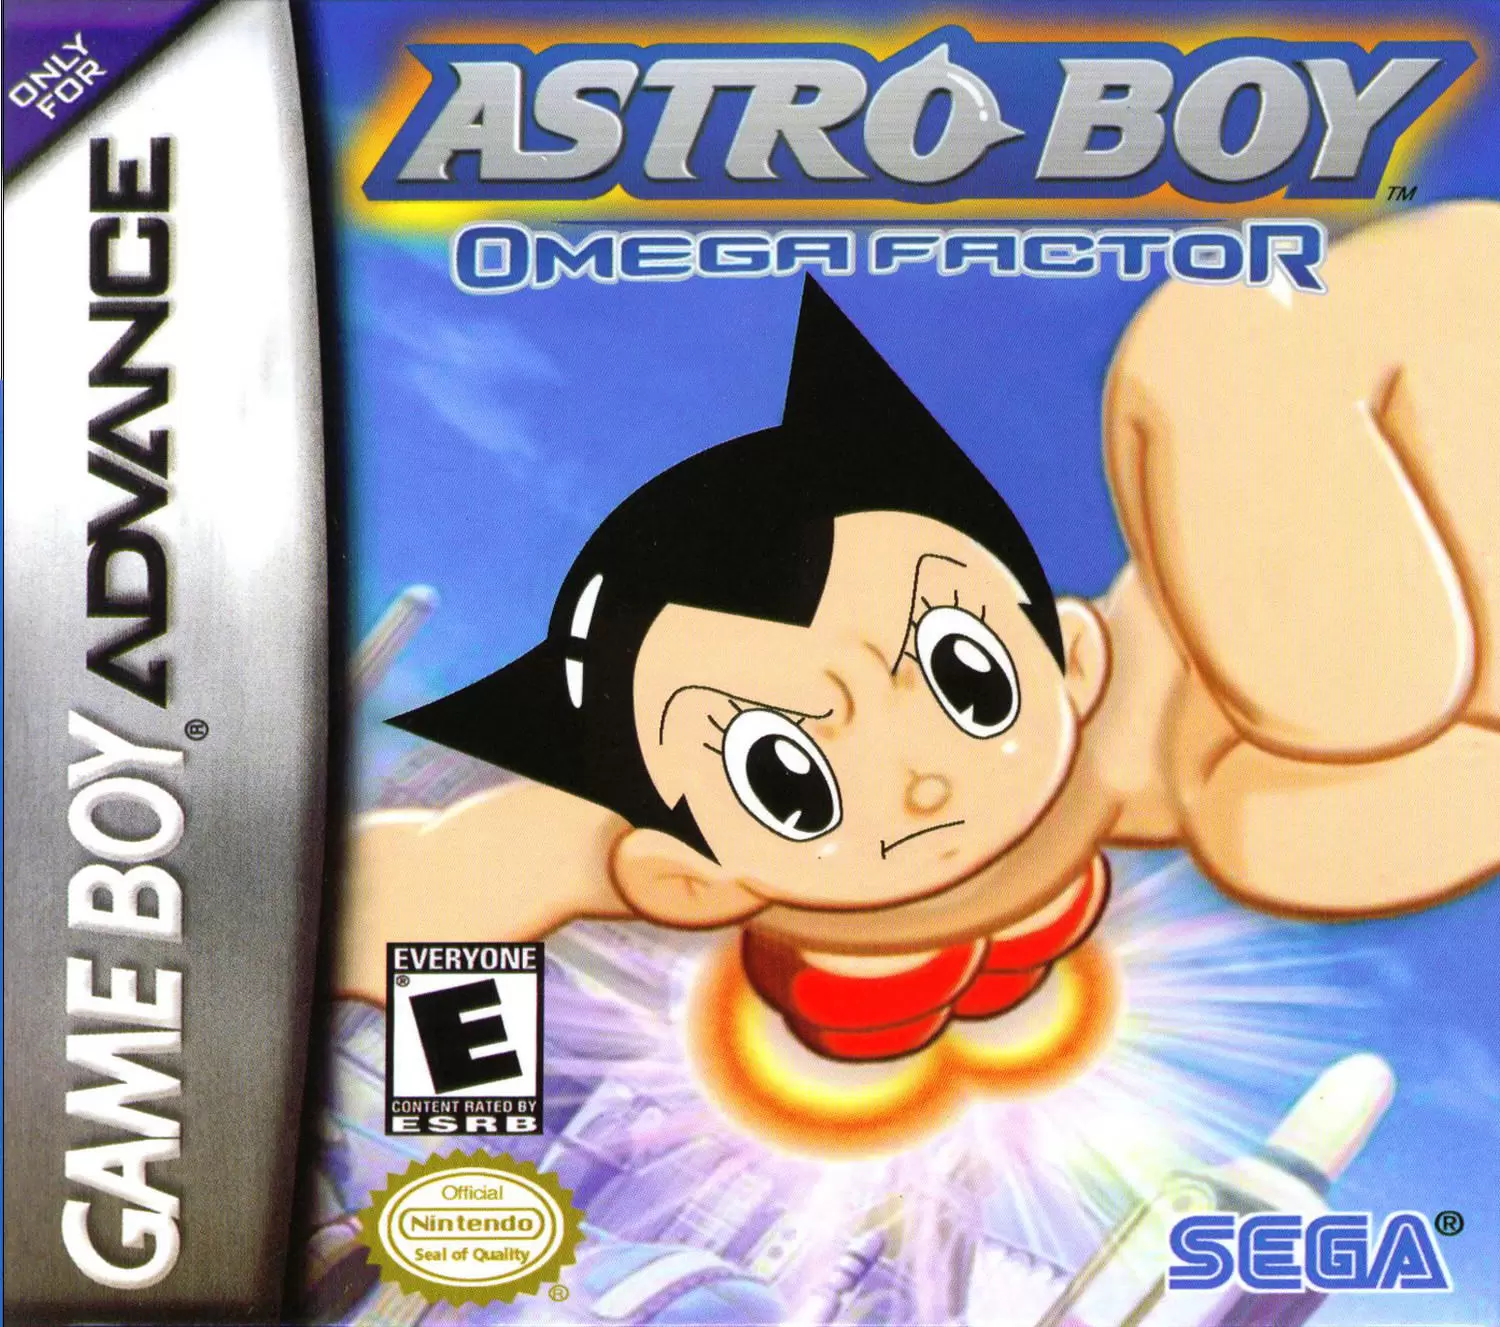 Game Boy Advance Games - Astro Boy: Omega Factor